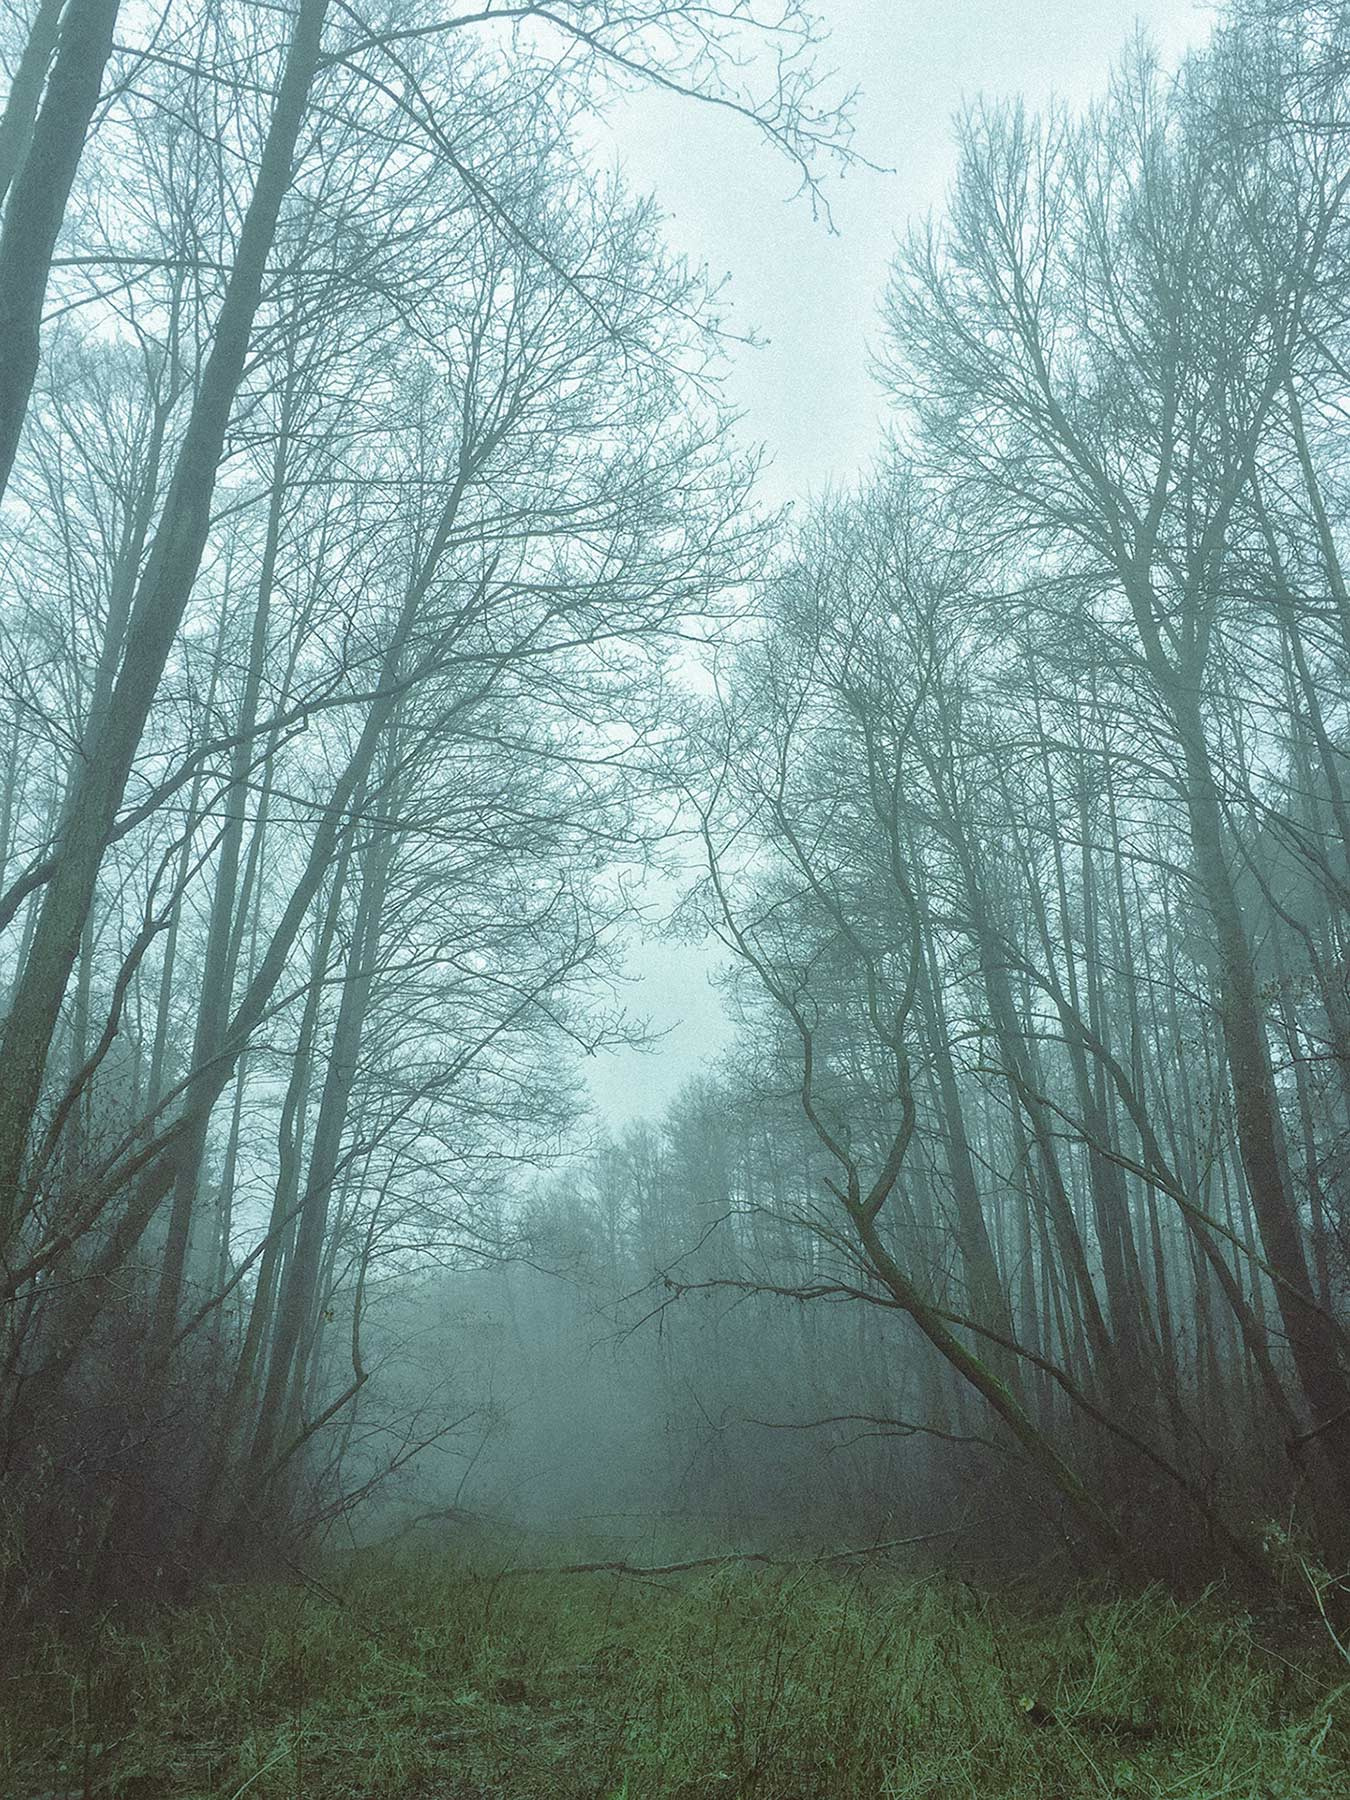 Мистический туман туман лес природа пейзаж путешествия путишествие рыбалка Туманное утро январь Украины Туманний ранок iphone iphonephoto Айфон Мобильное фото мобилография Январь 2020 mobilephoto